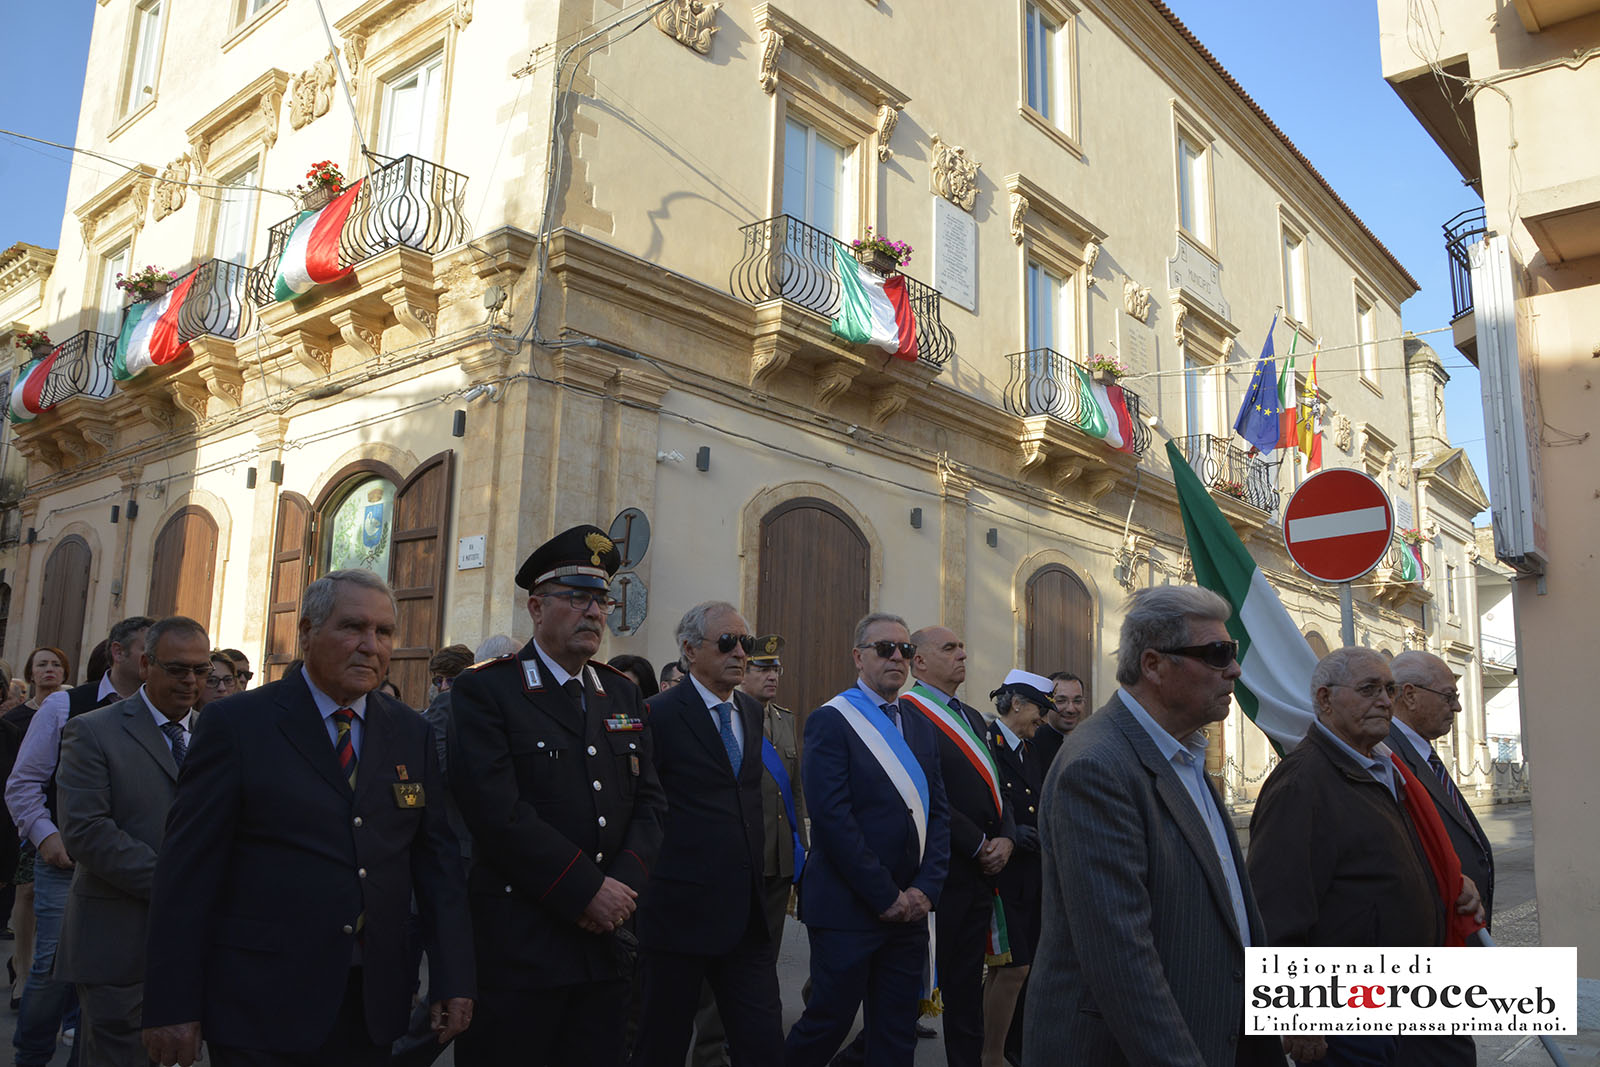  Le celebrazioni del 25 Aprile a Santa Croce: guarda VIDEO e FOTOGALLERY